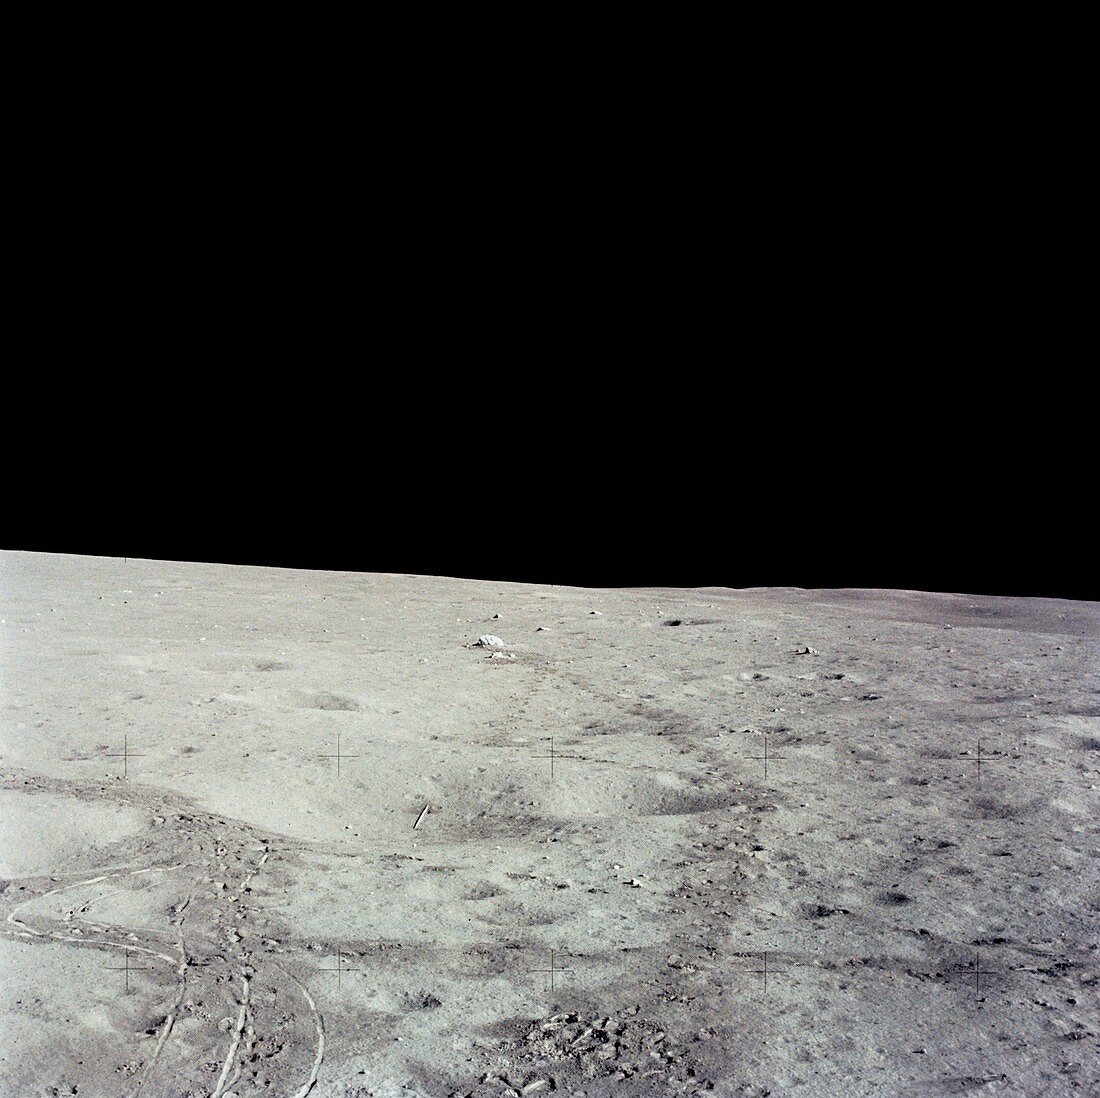 Lunar surface,Apollo 14 image